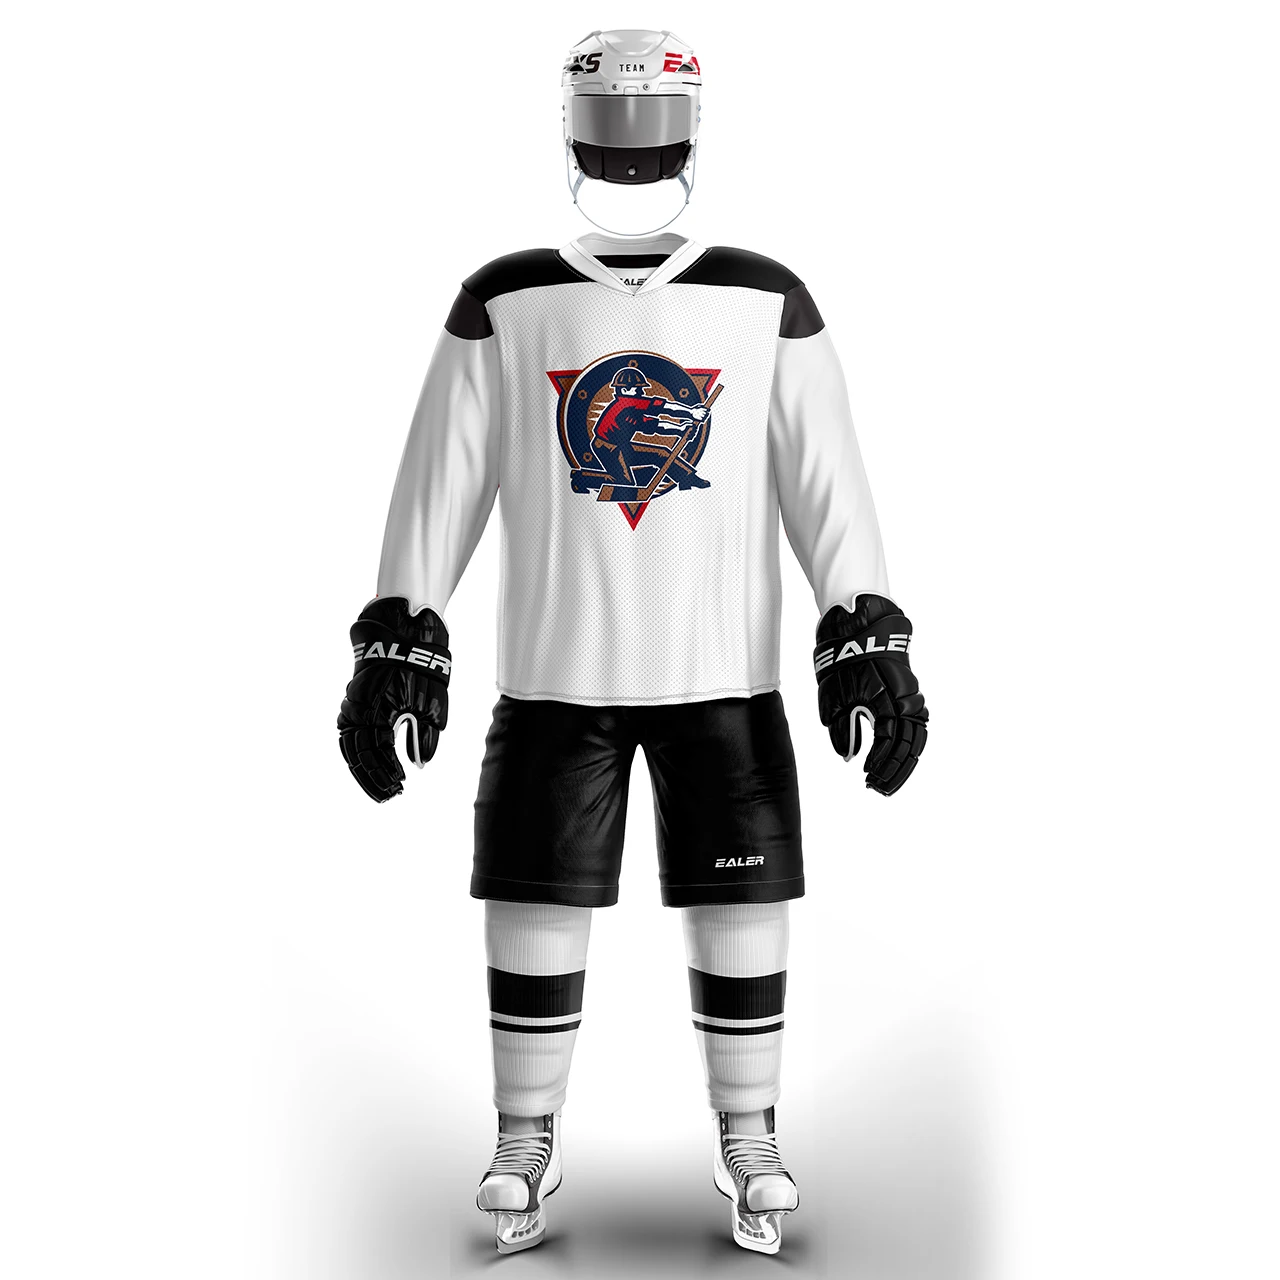 Coldоткрытом воздухе винтажные хоккейные тренировочные майки набор с принтом Oilers логотип пятно дешевые высокое качество H6100-9